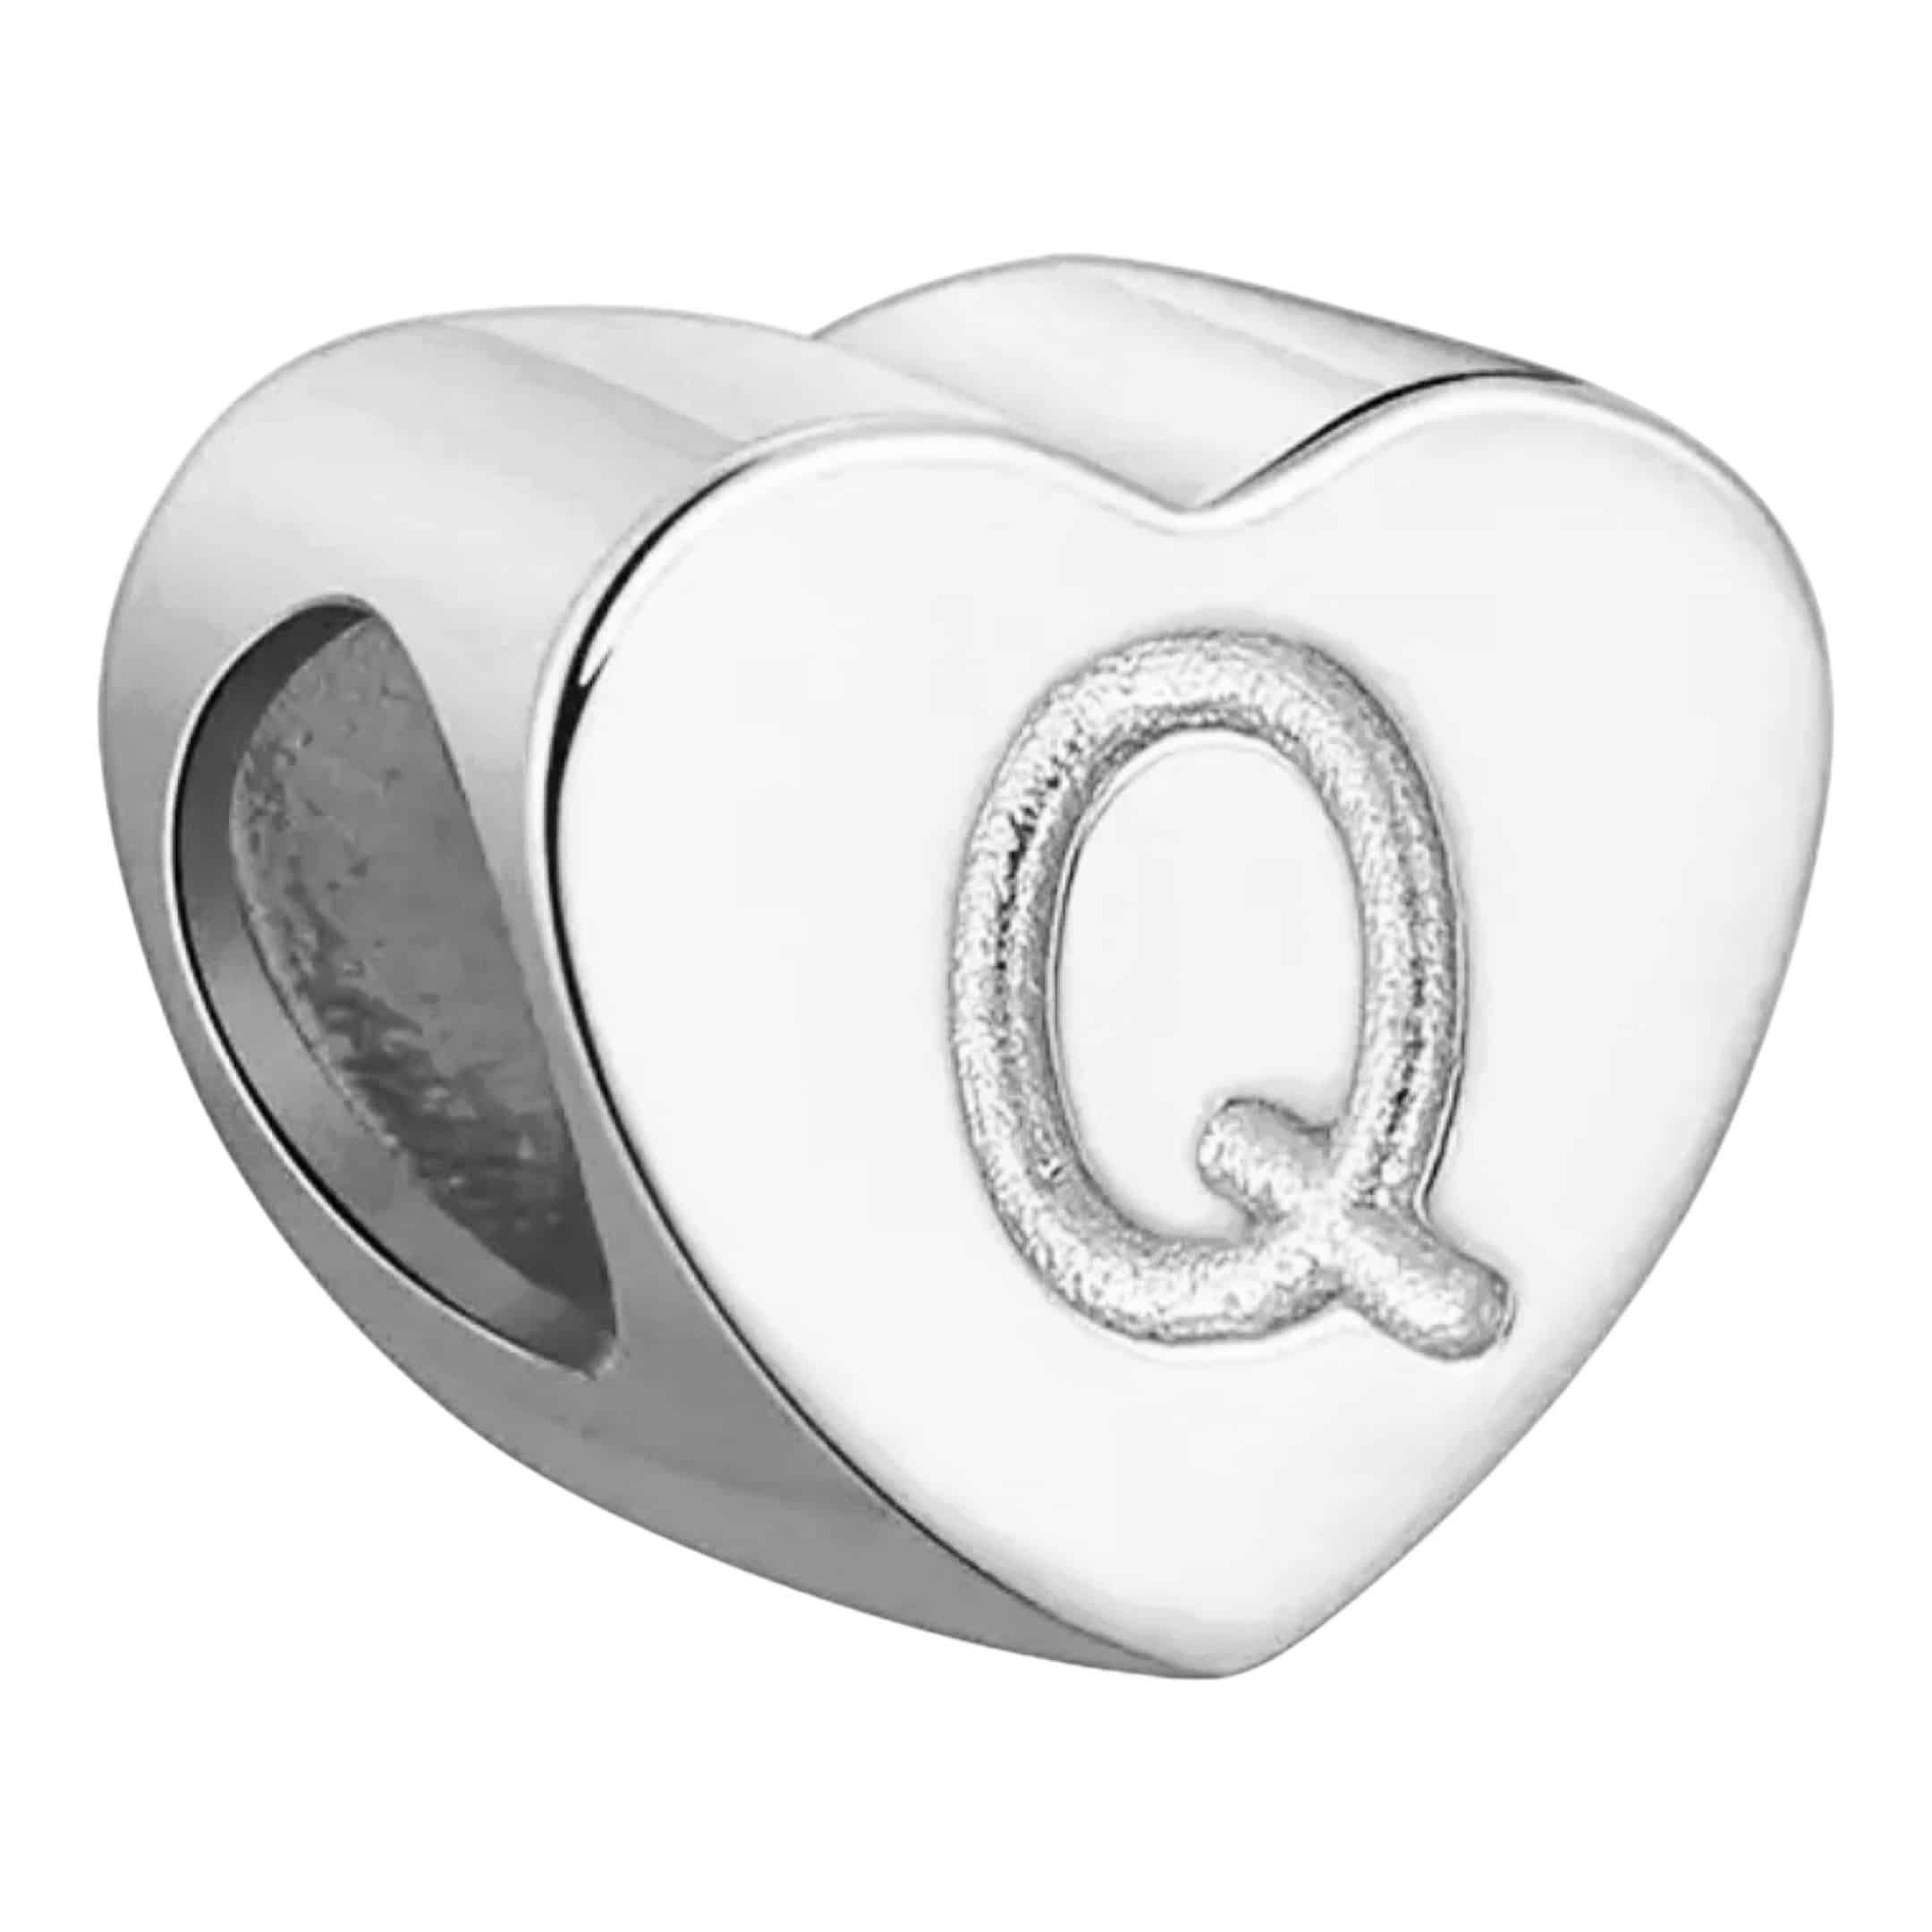 Product Afbeelding Voor en Achteraanzicht van onze prachtige hart letter bead uit de collectie sierletters en cijfers. Deze prachtige bedel met de letter Q is gemaakt van 925 sterling zilver en is gegraveerd met de letter q in het hart.